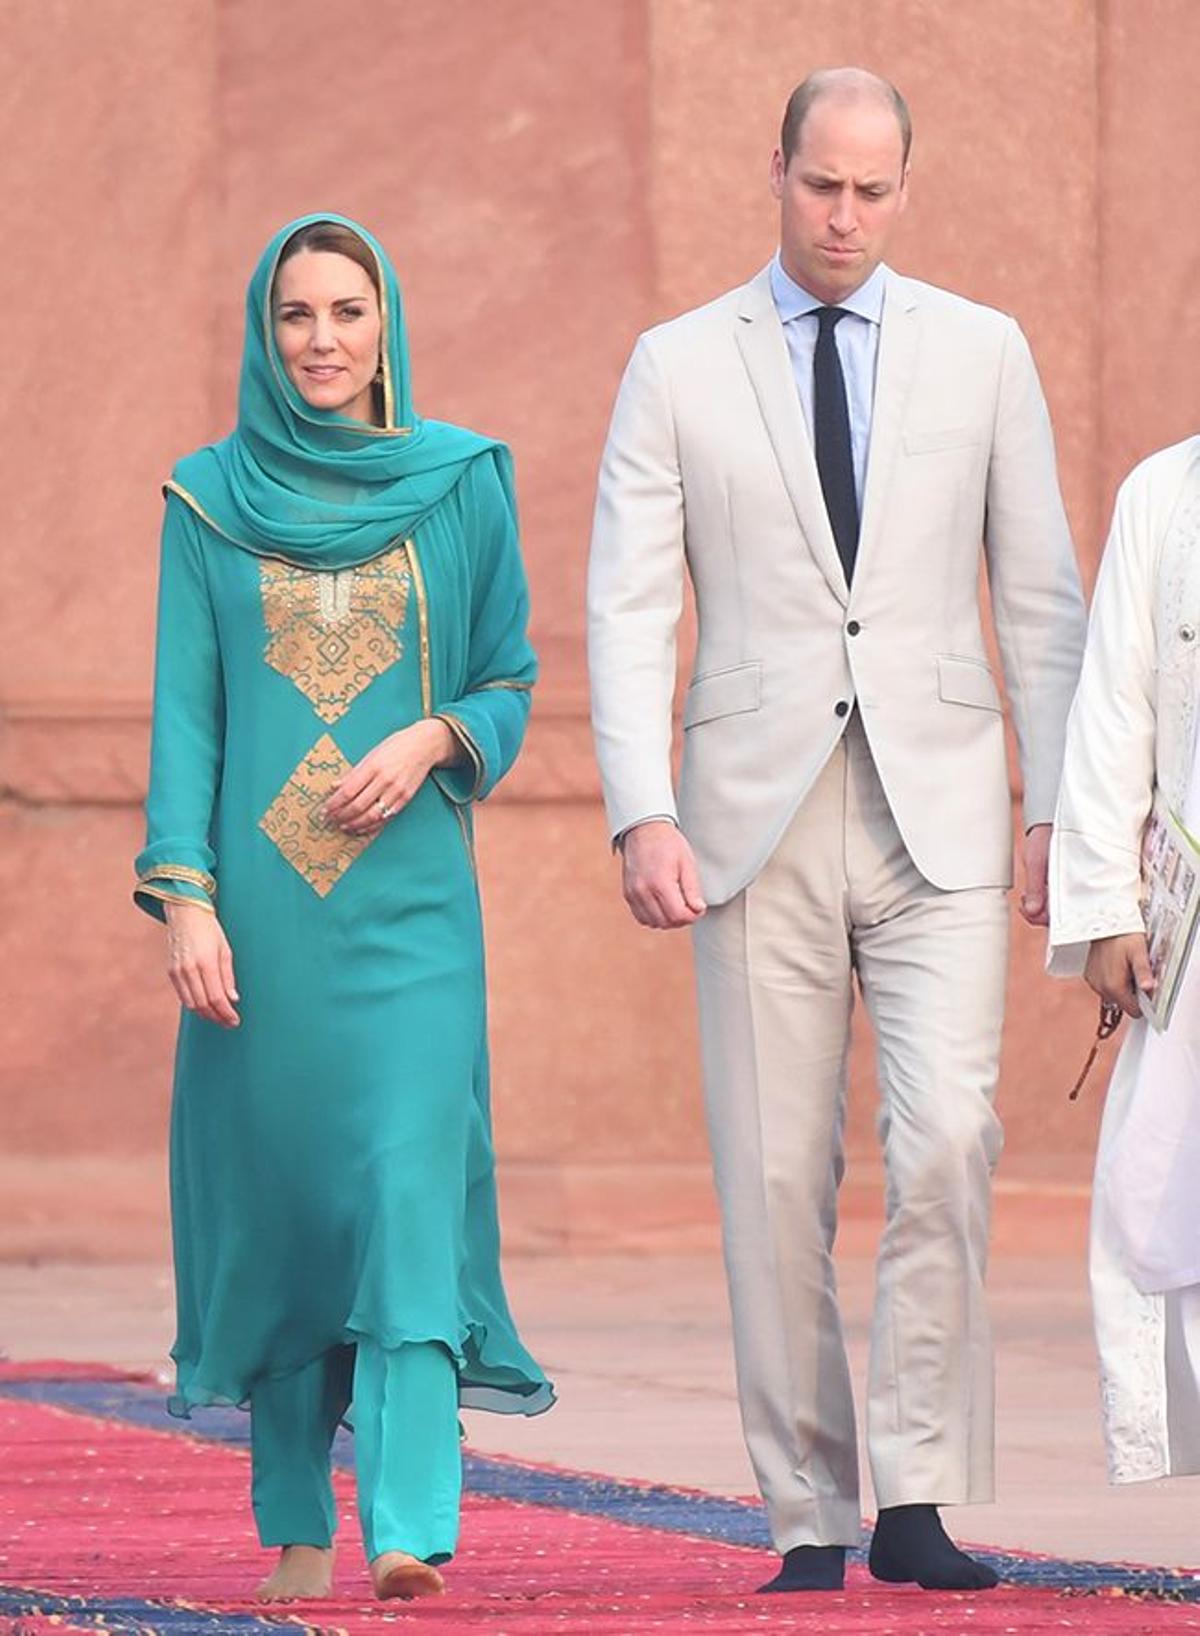 Los duques de Cambridge visitando una mezquita en Pakistan